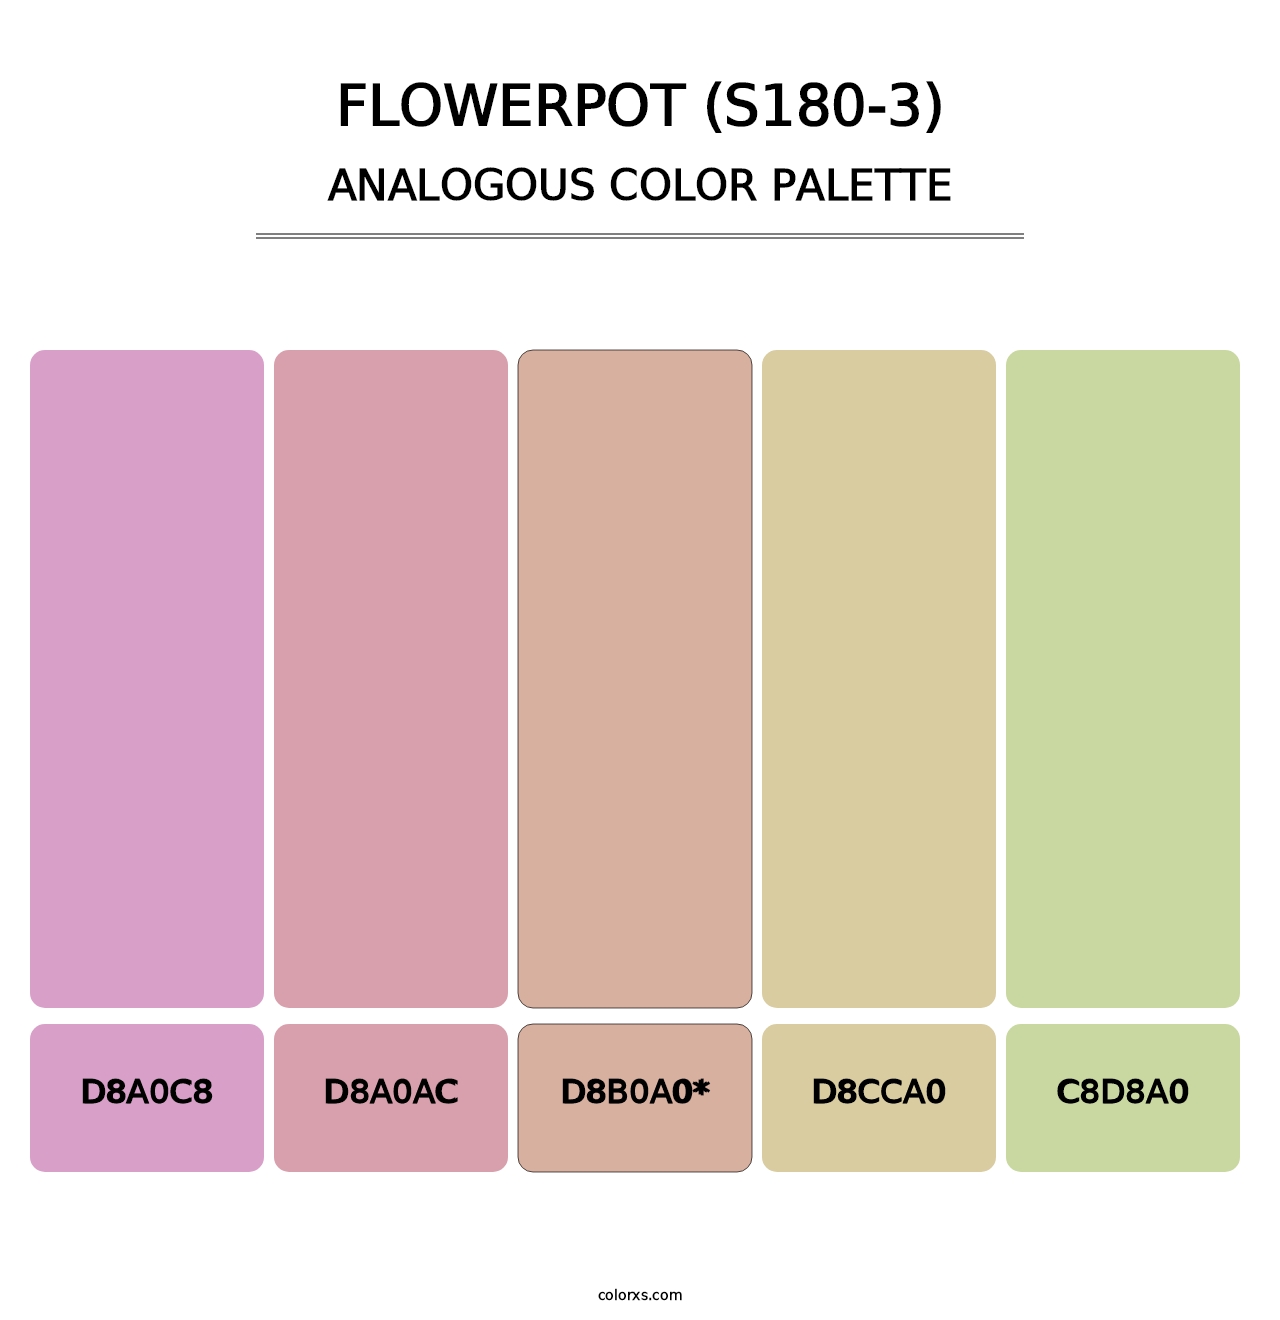 Flowerpot (S180-3) - Analogous Color Palette